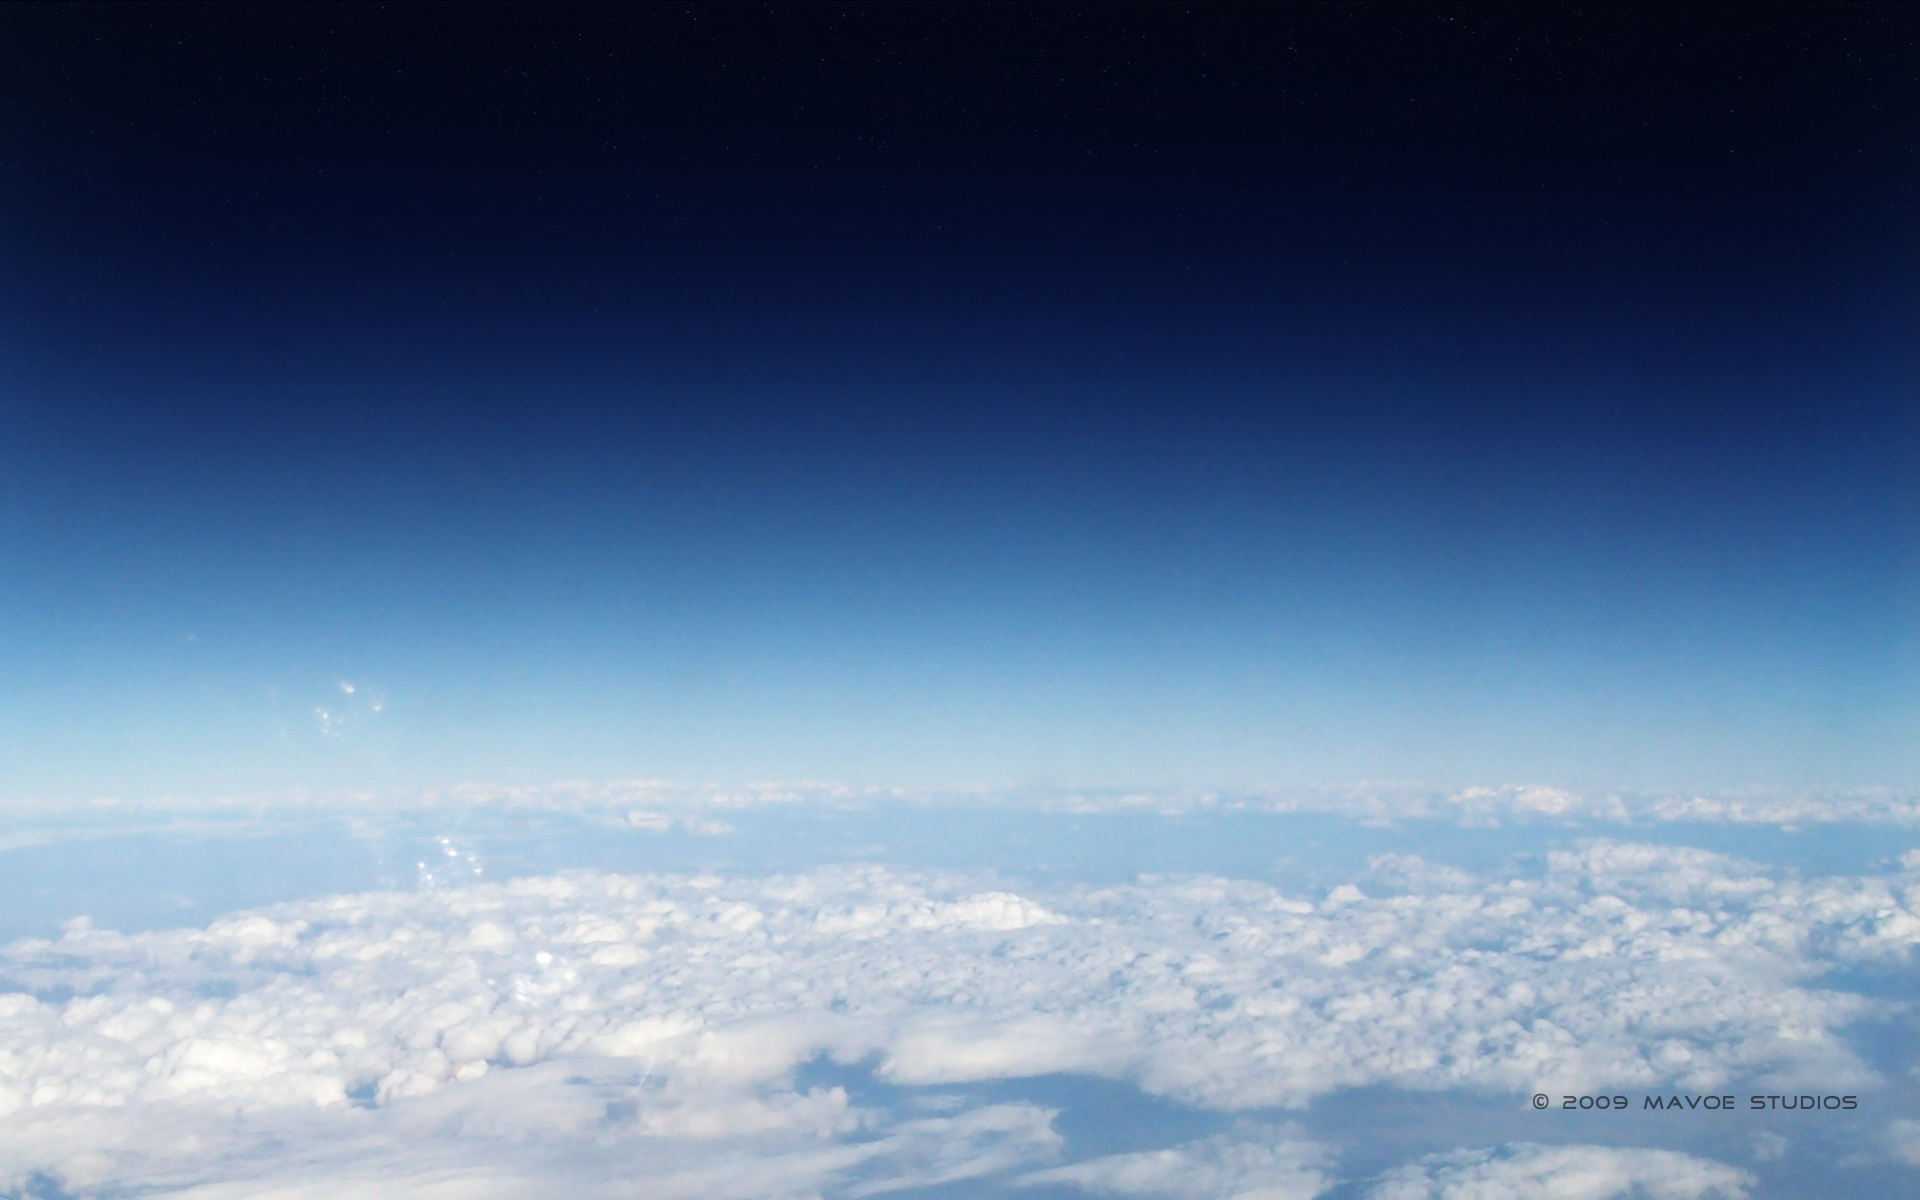 spacex壁紙,空,雰囲気,雲,昼間,青い